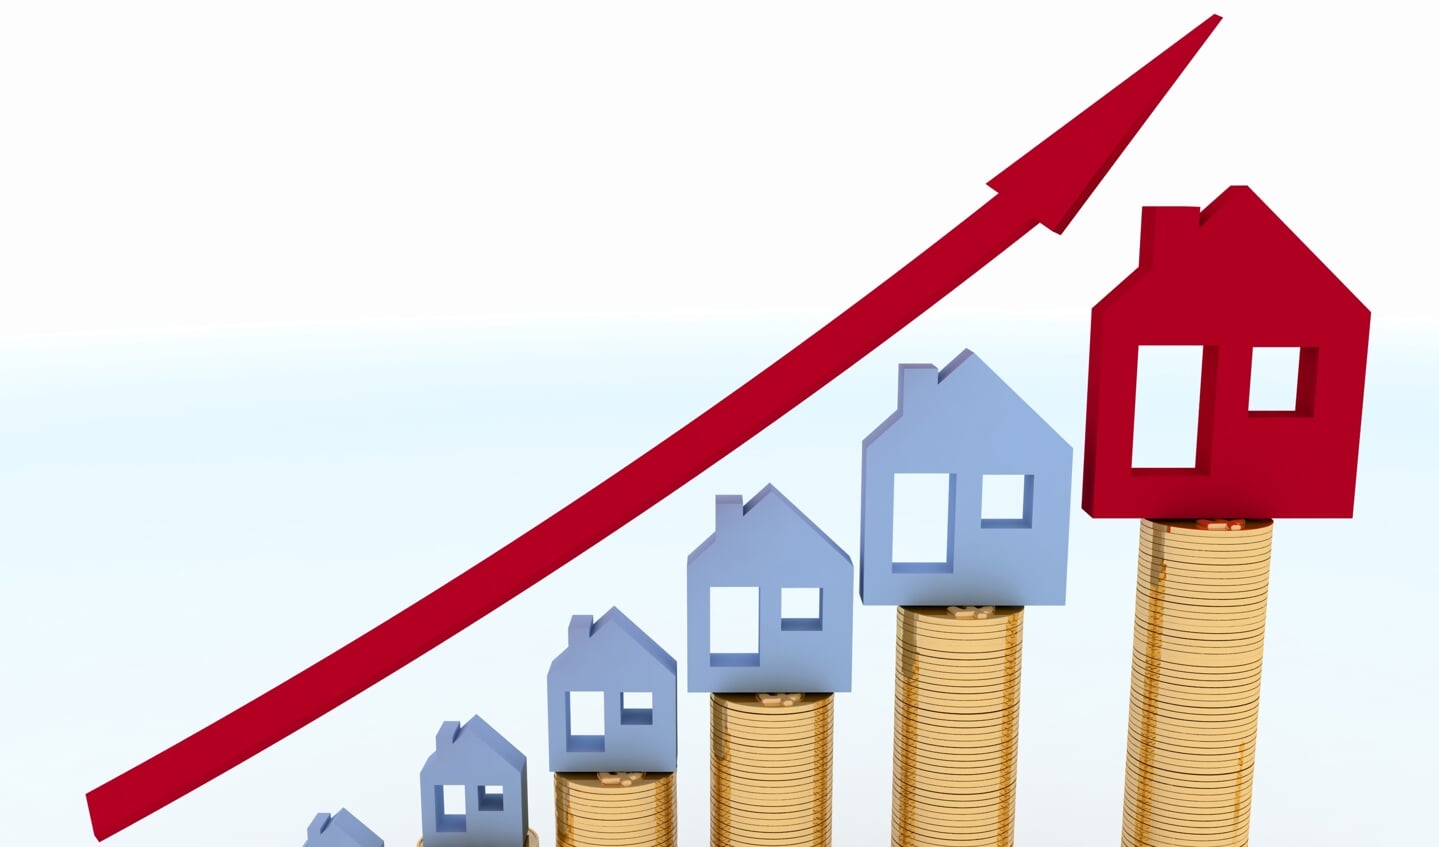 De prijzen van huizen schieten de laatste jaren omhoog